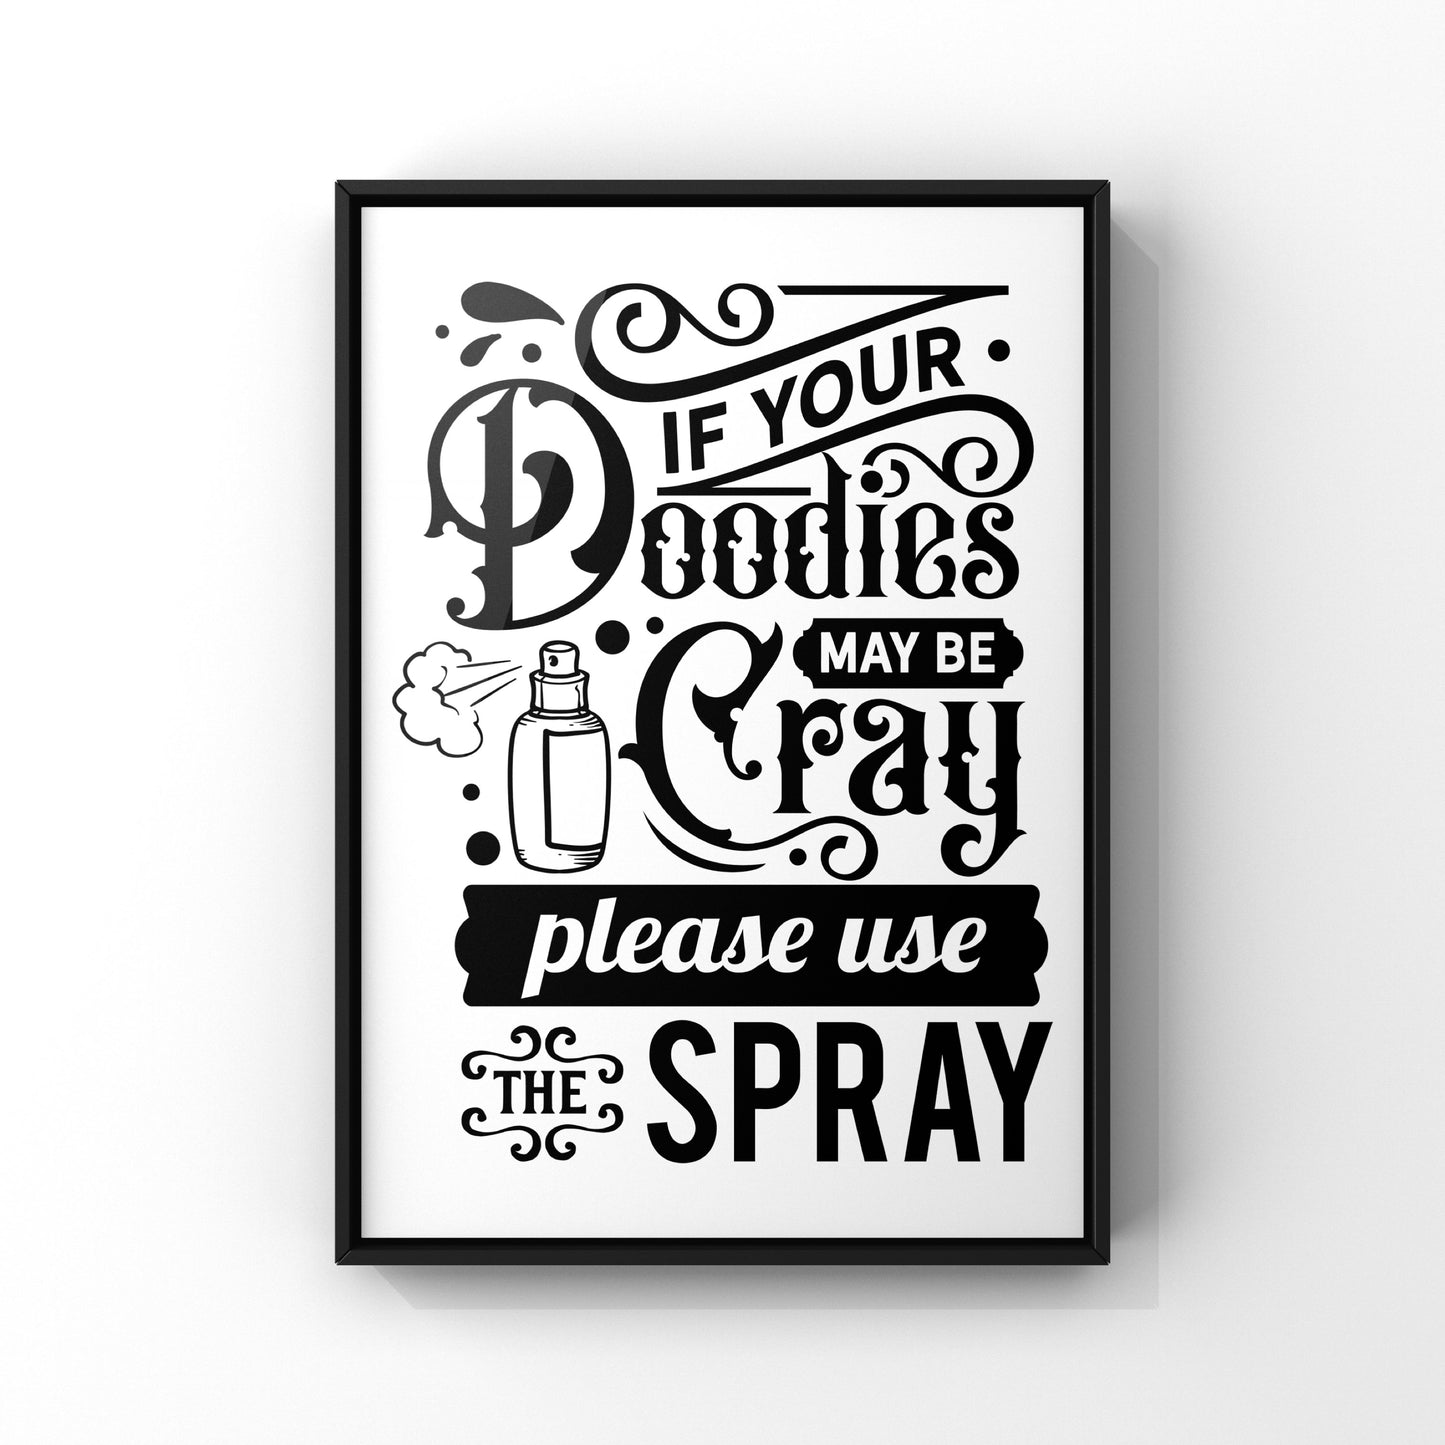 Please use the spray